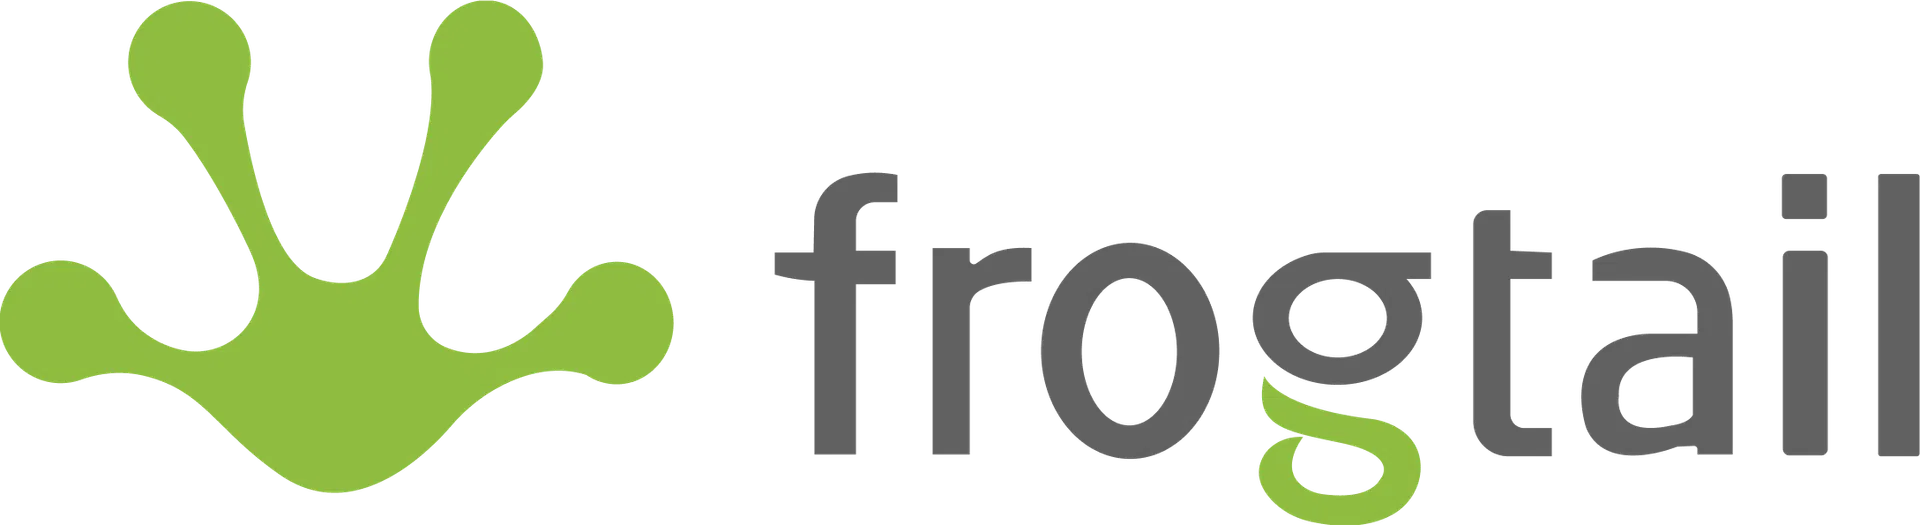 Frogtail bank logga i grå och svart färg